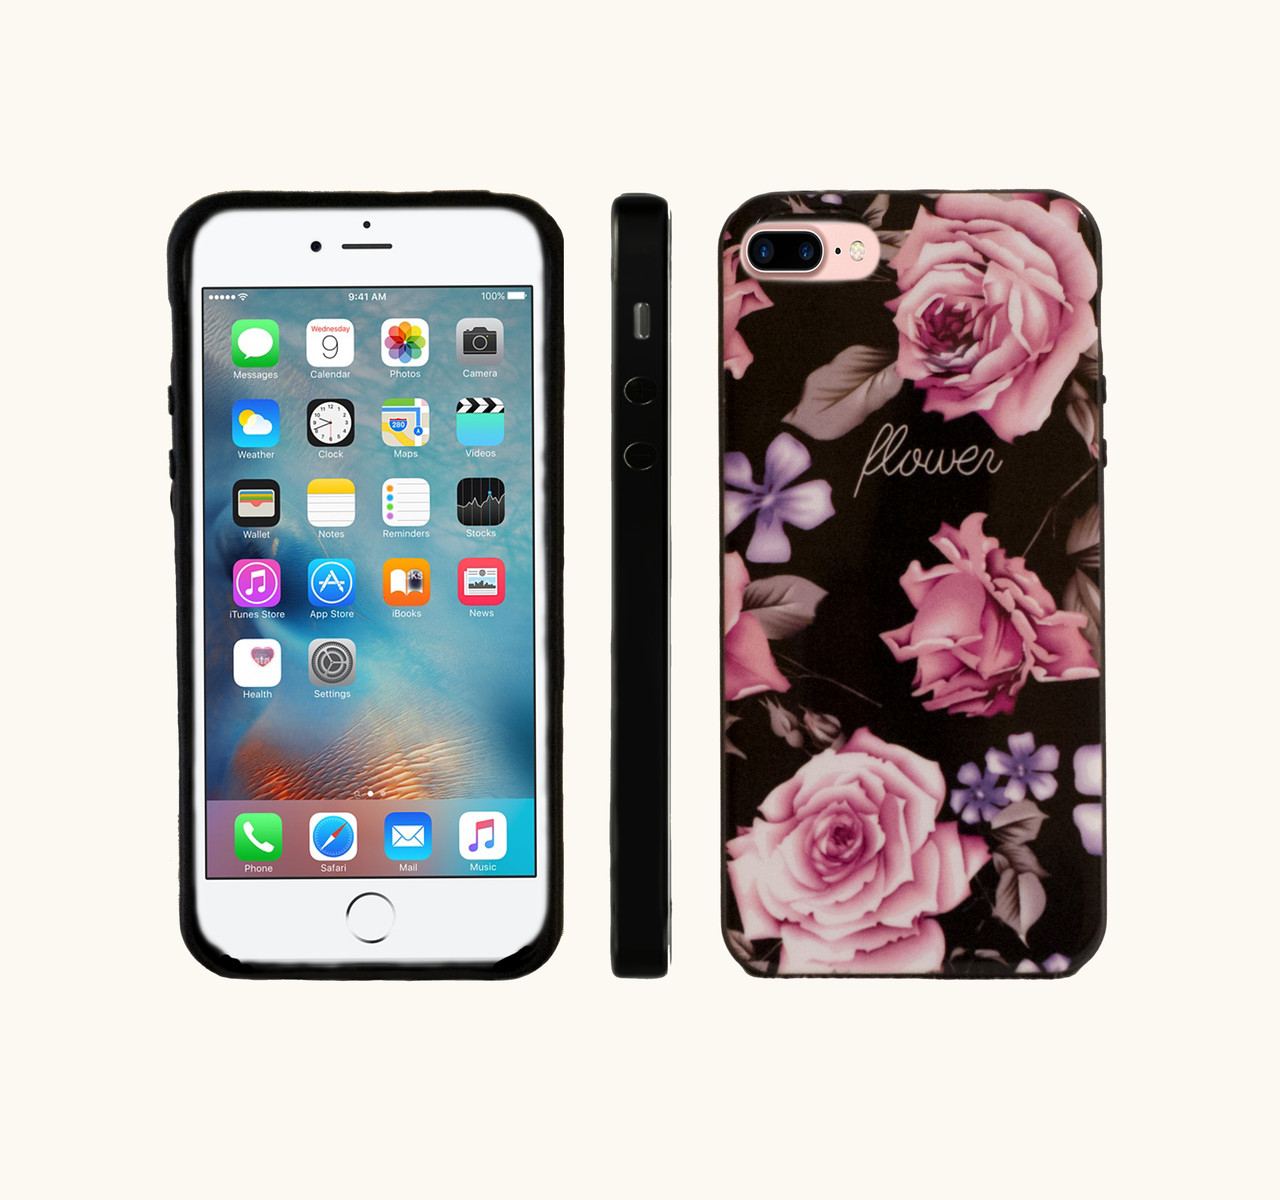 Бампер Primo Rose Flower для Apple iPhone 7 Plus / 8 Plus